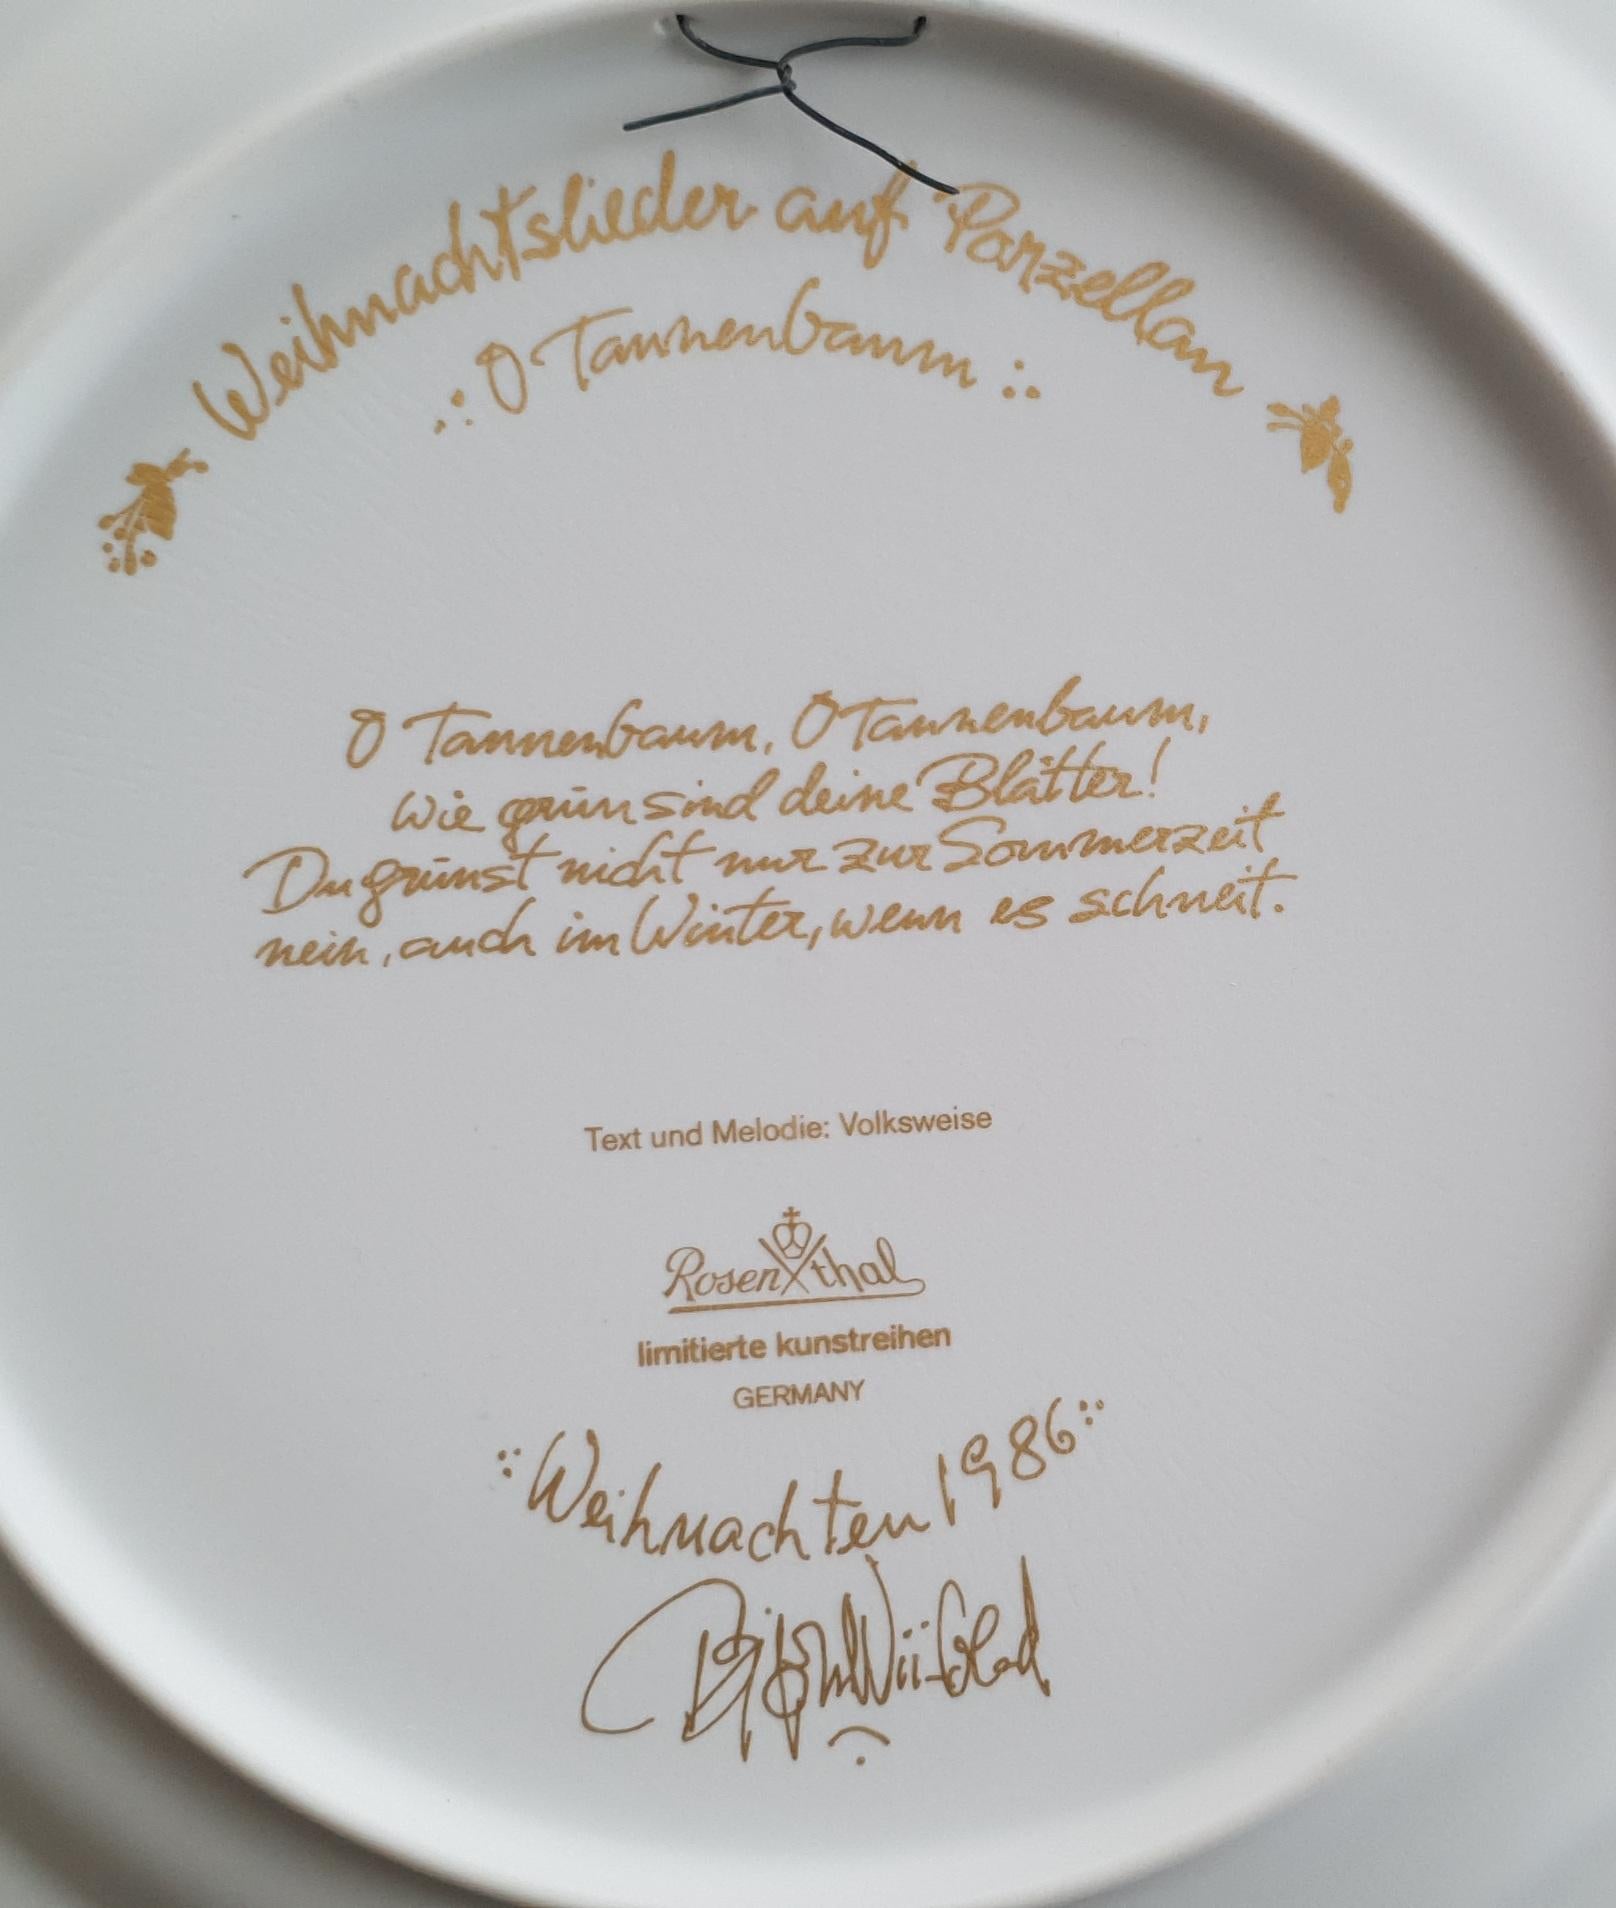 Bjørn Wiinblad Christmas Plate 1986 